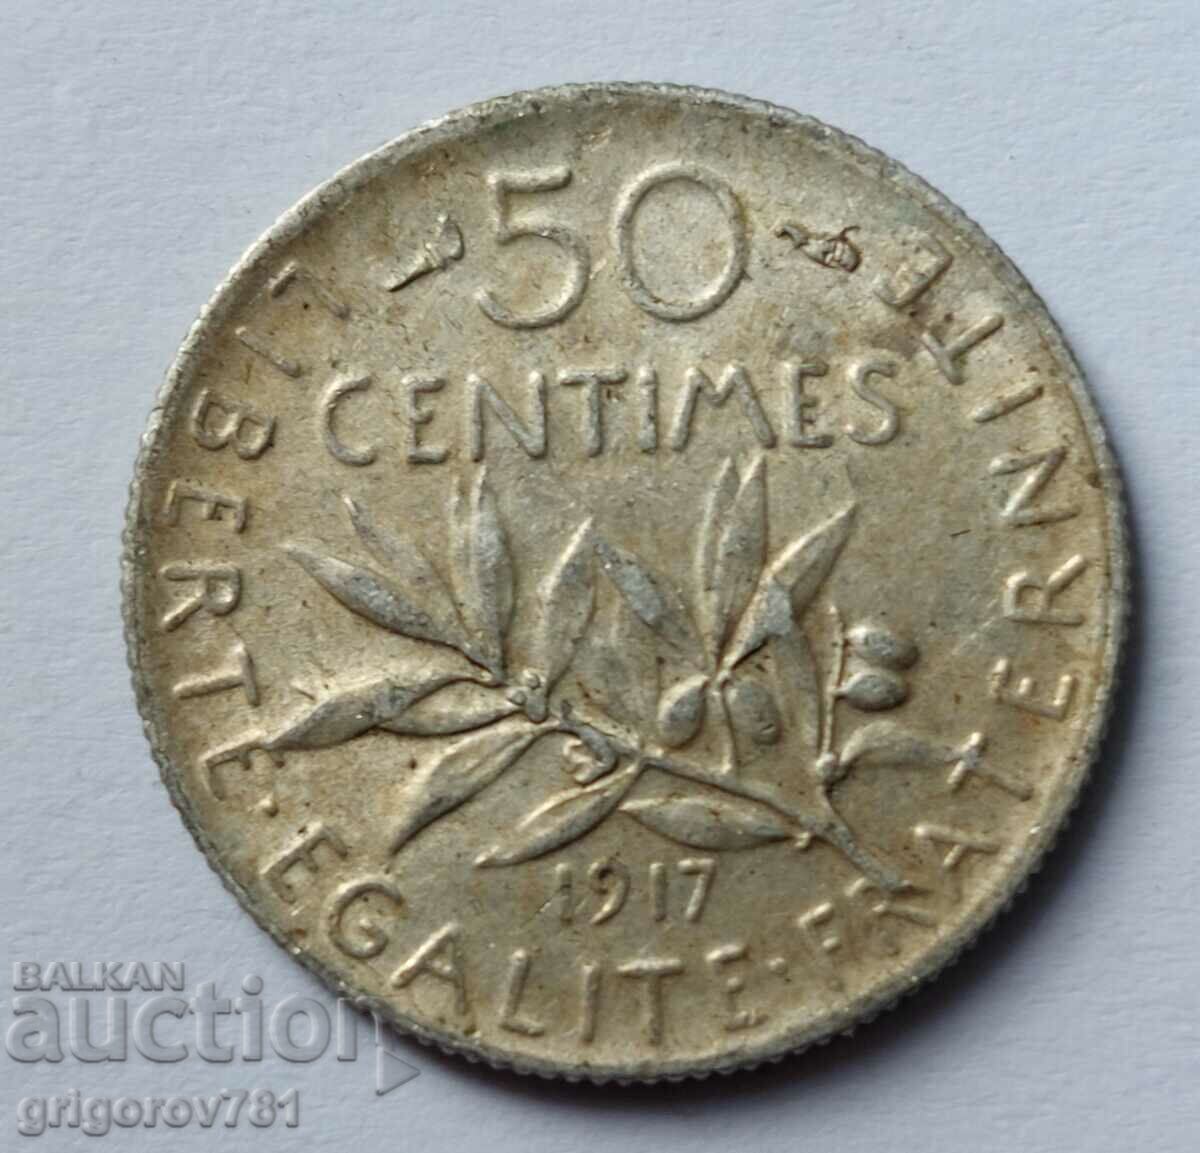 Ασημένιο 50 εκατοστά Γαλλία 1917 - ασημένιο νόμισμα №13